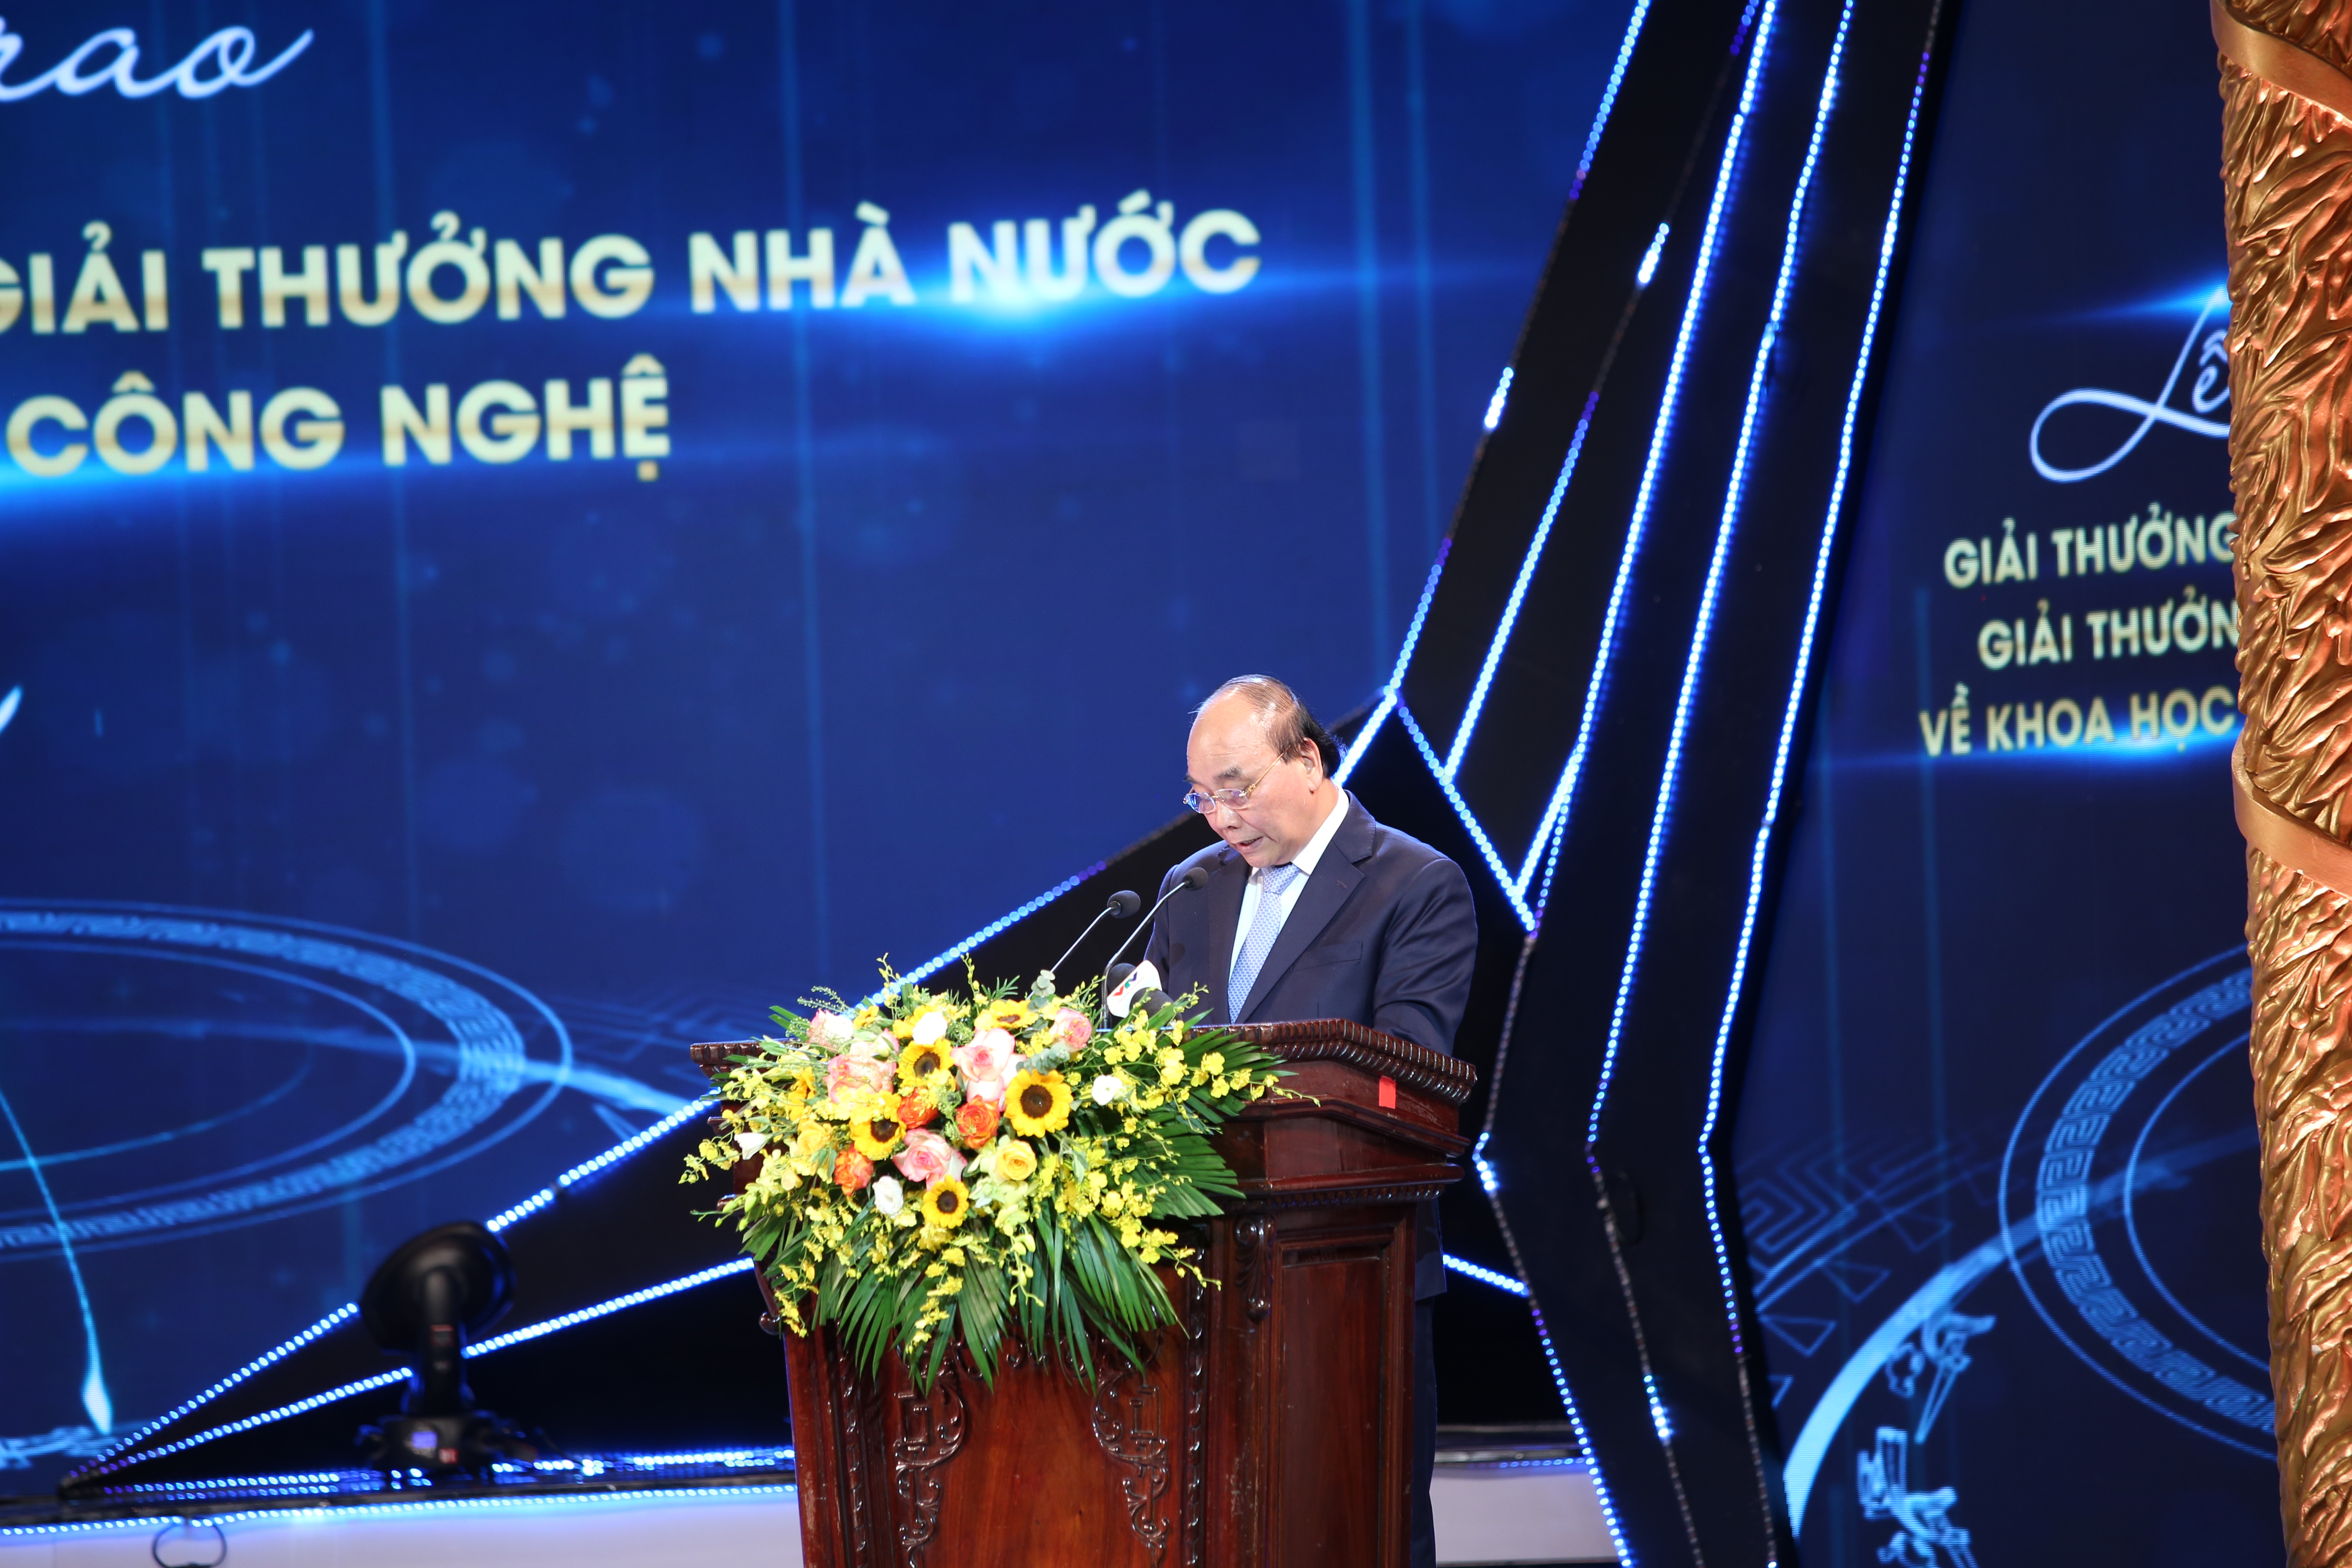 Chủ tịch nước Nguyễn Xuân Phúc phát biểu trong lễ trao giải. Ảnh: TA